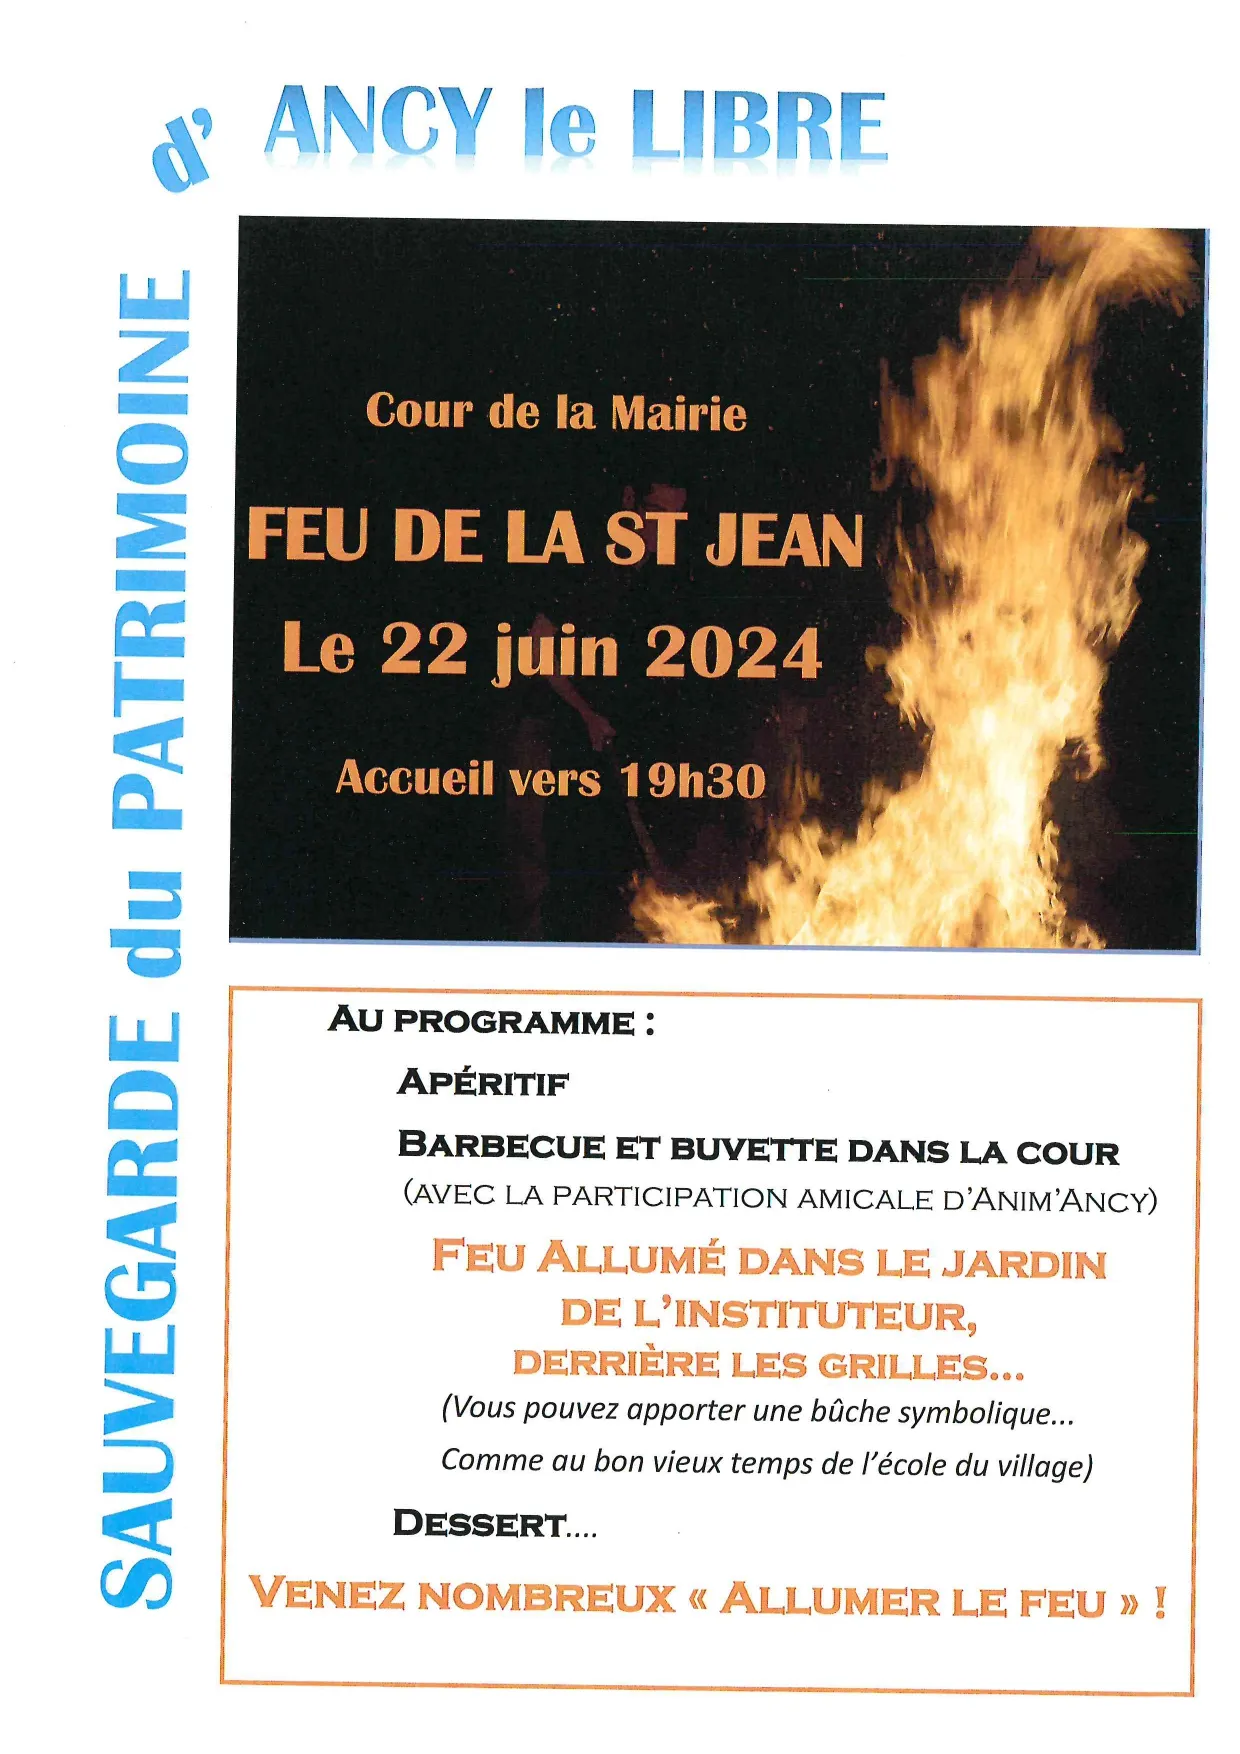 Image qui illustre: Feu de la Saint-Jean à Ancy-le-Libre - 0